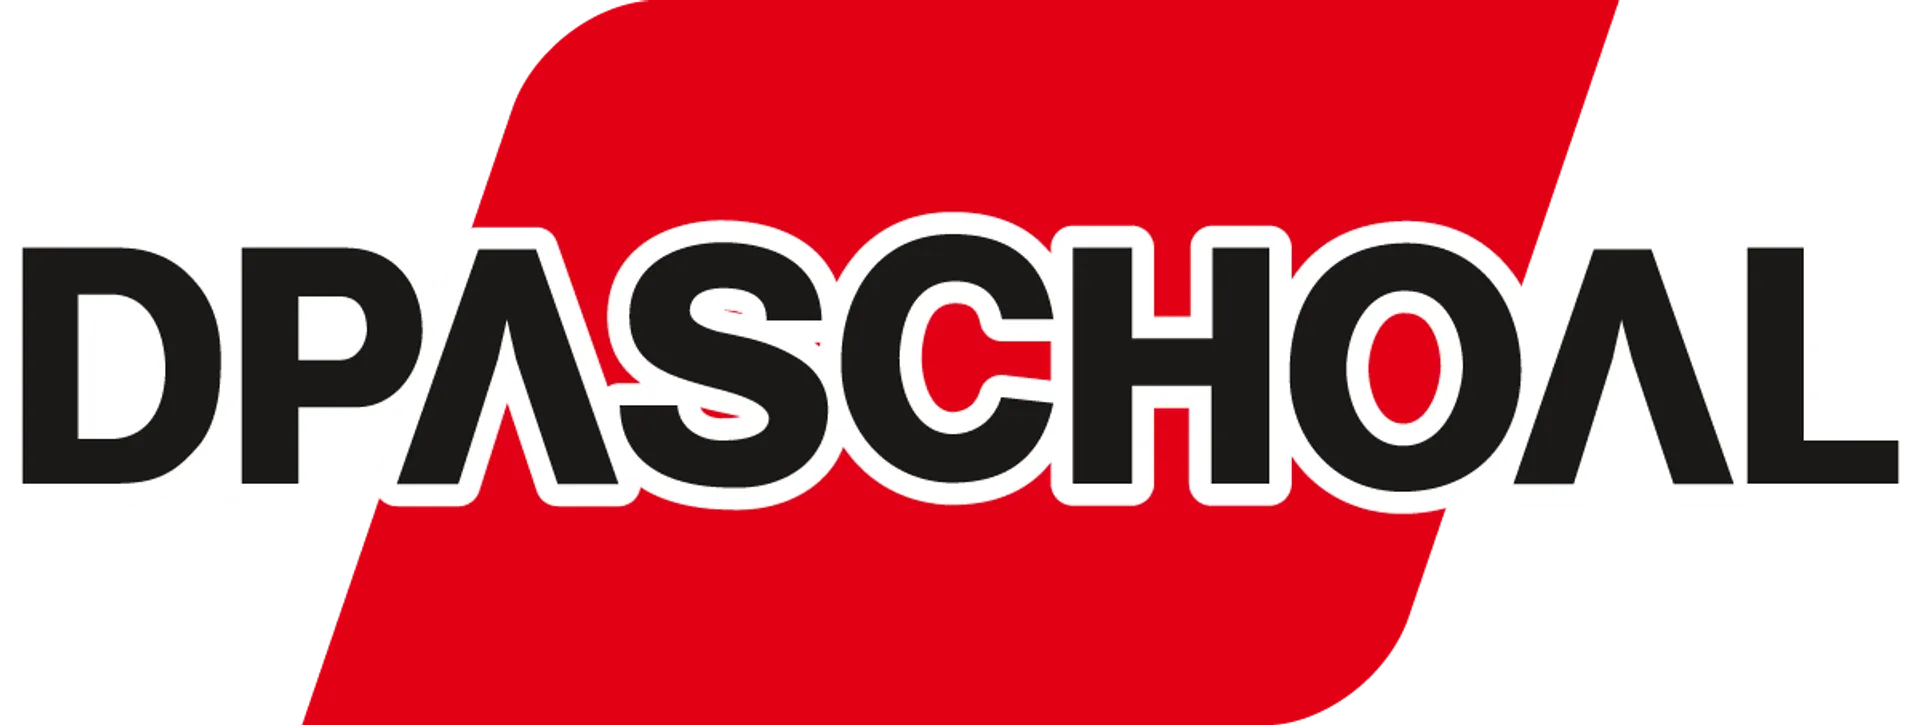 DPASCHOAL logo